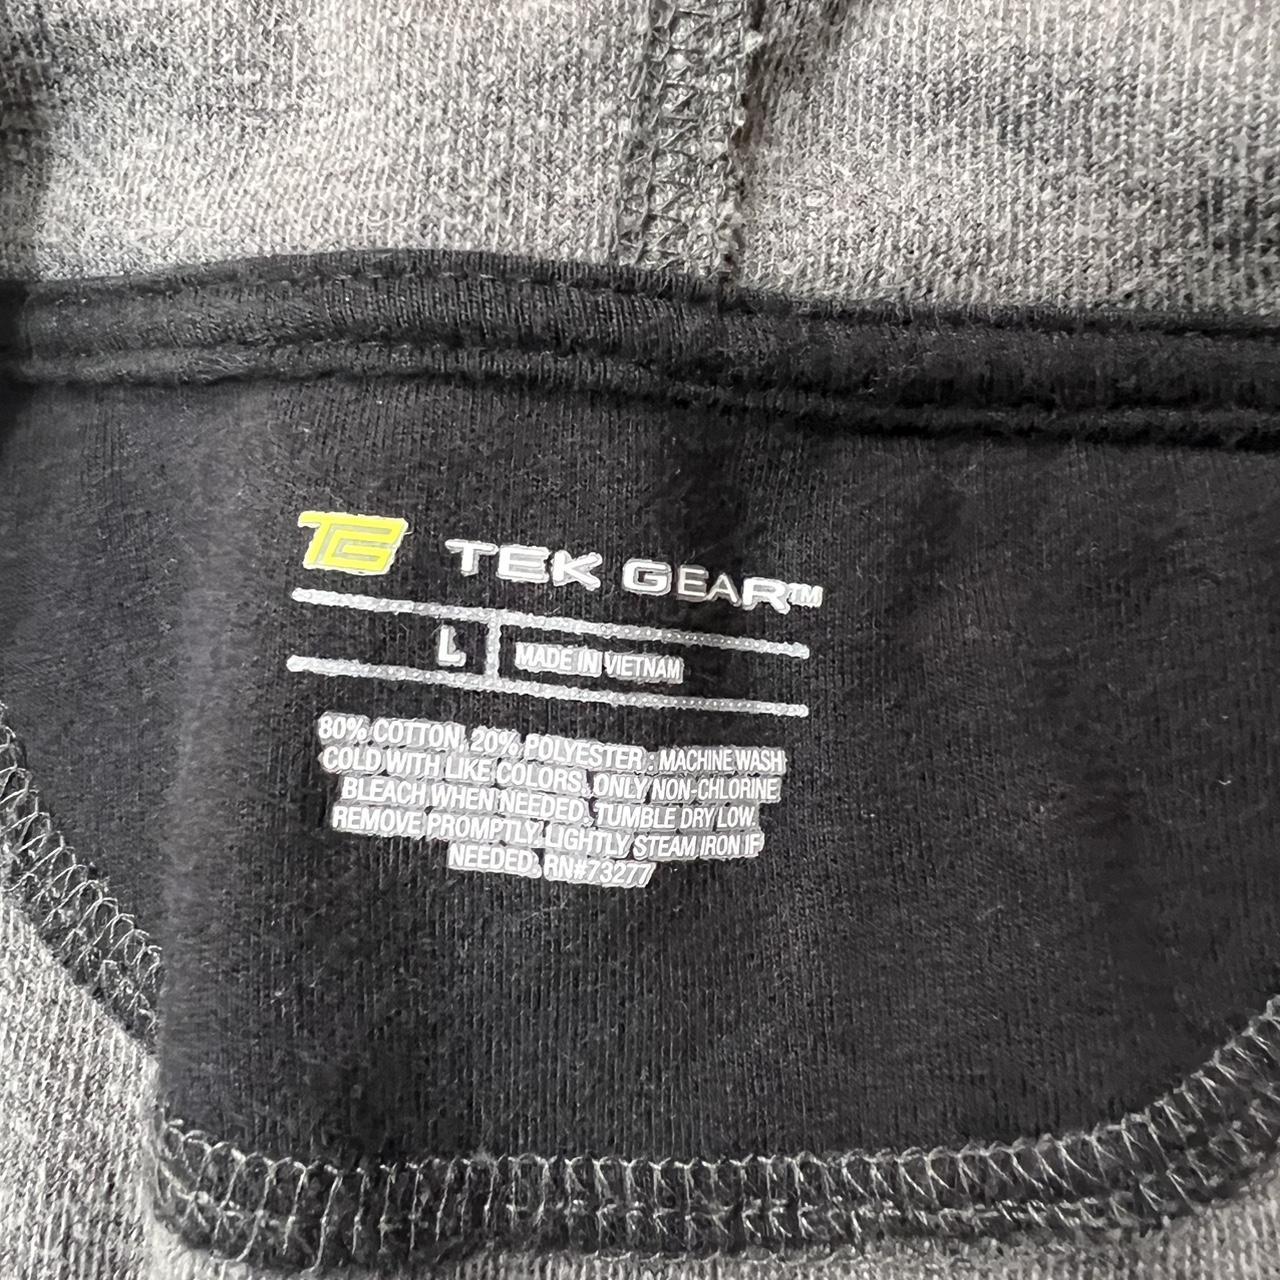 Tek Gear Women's Fleece Pants Size Large Good - Depop